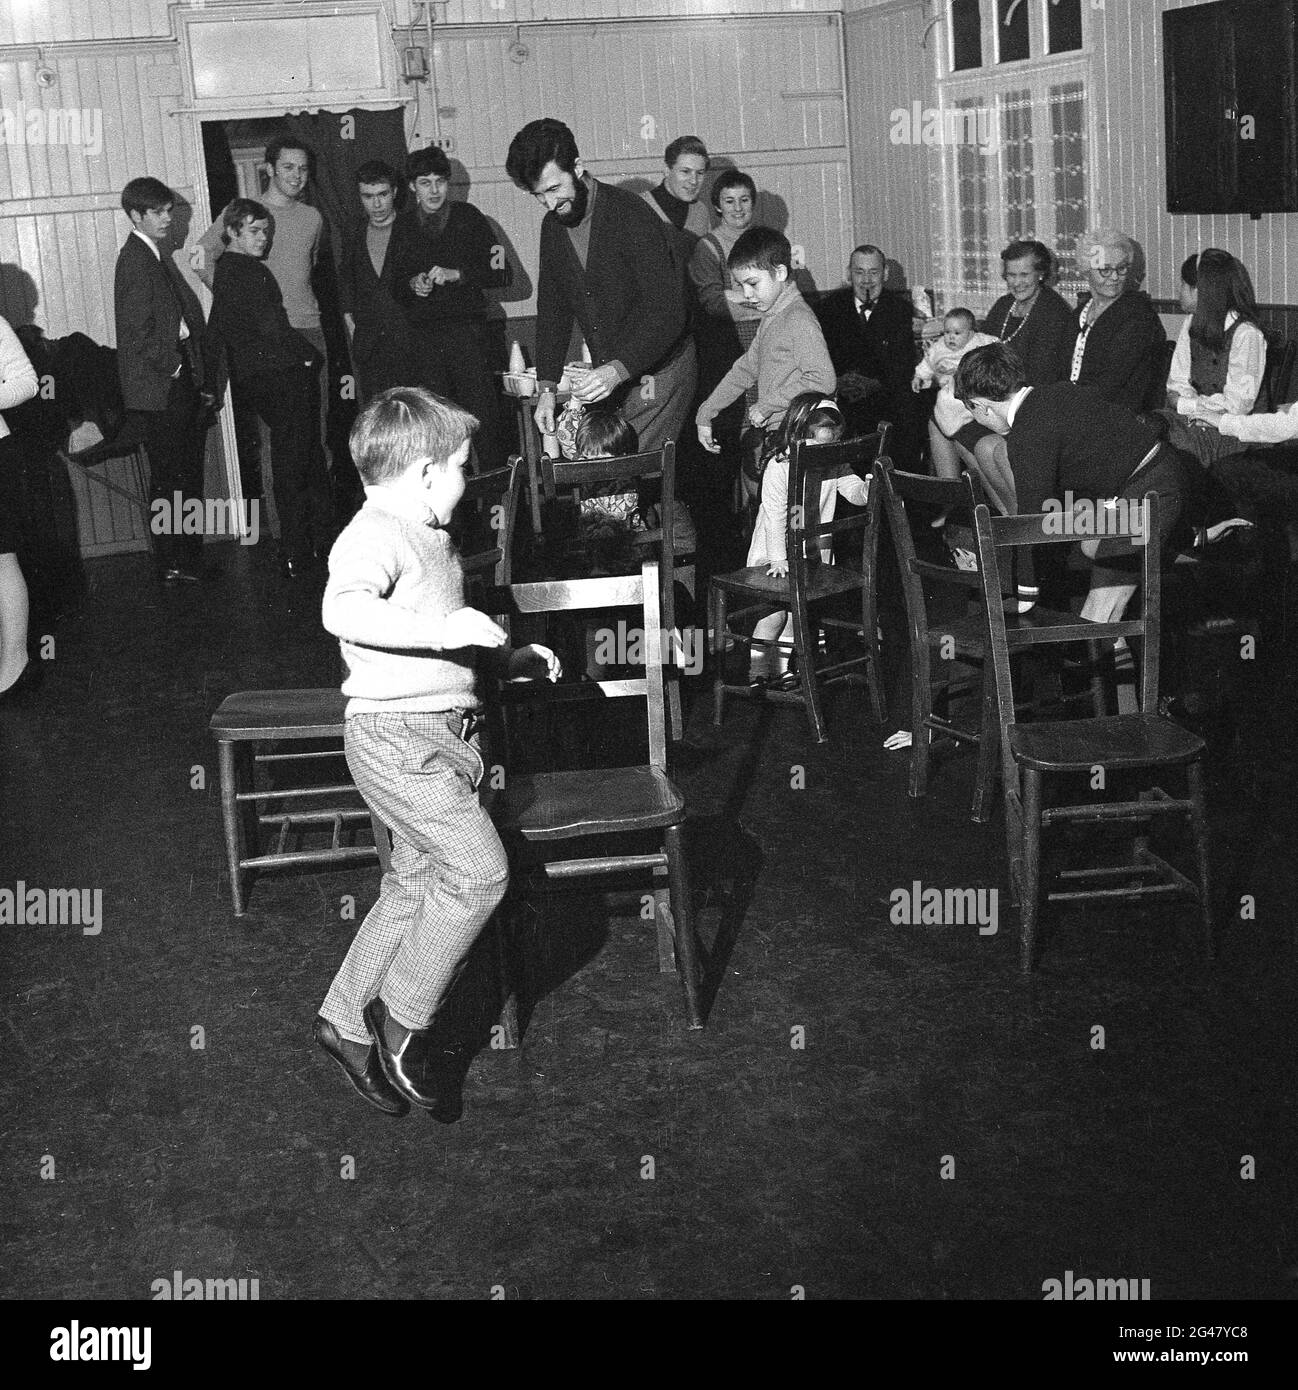 Années 1960, histoire, adultes dans une salle de village regardant de jeunes enfants jouer à un jeu autour de chaises en bois lors d'une fête familiale, Essex, Angleterre, Royaume-Uni. Banque D'Images